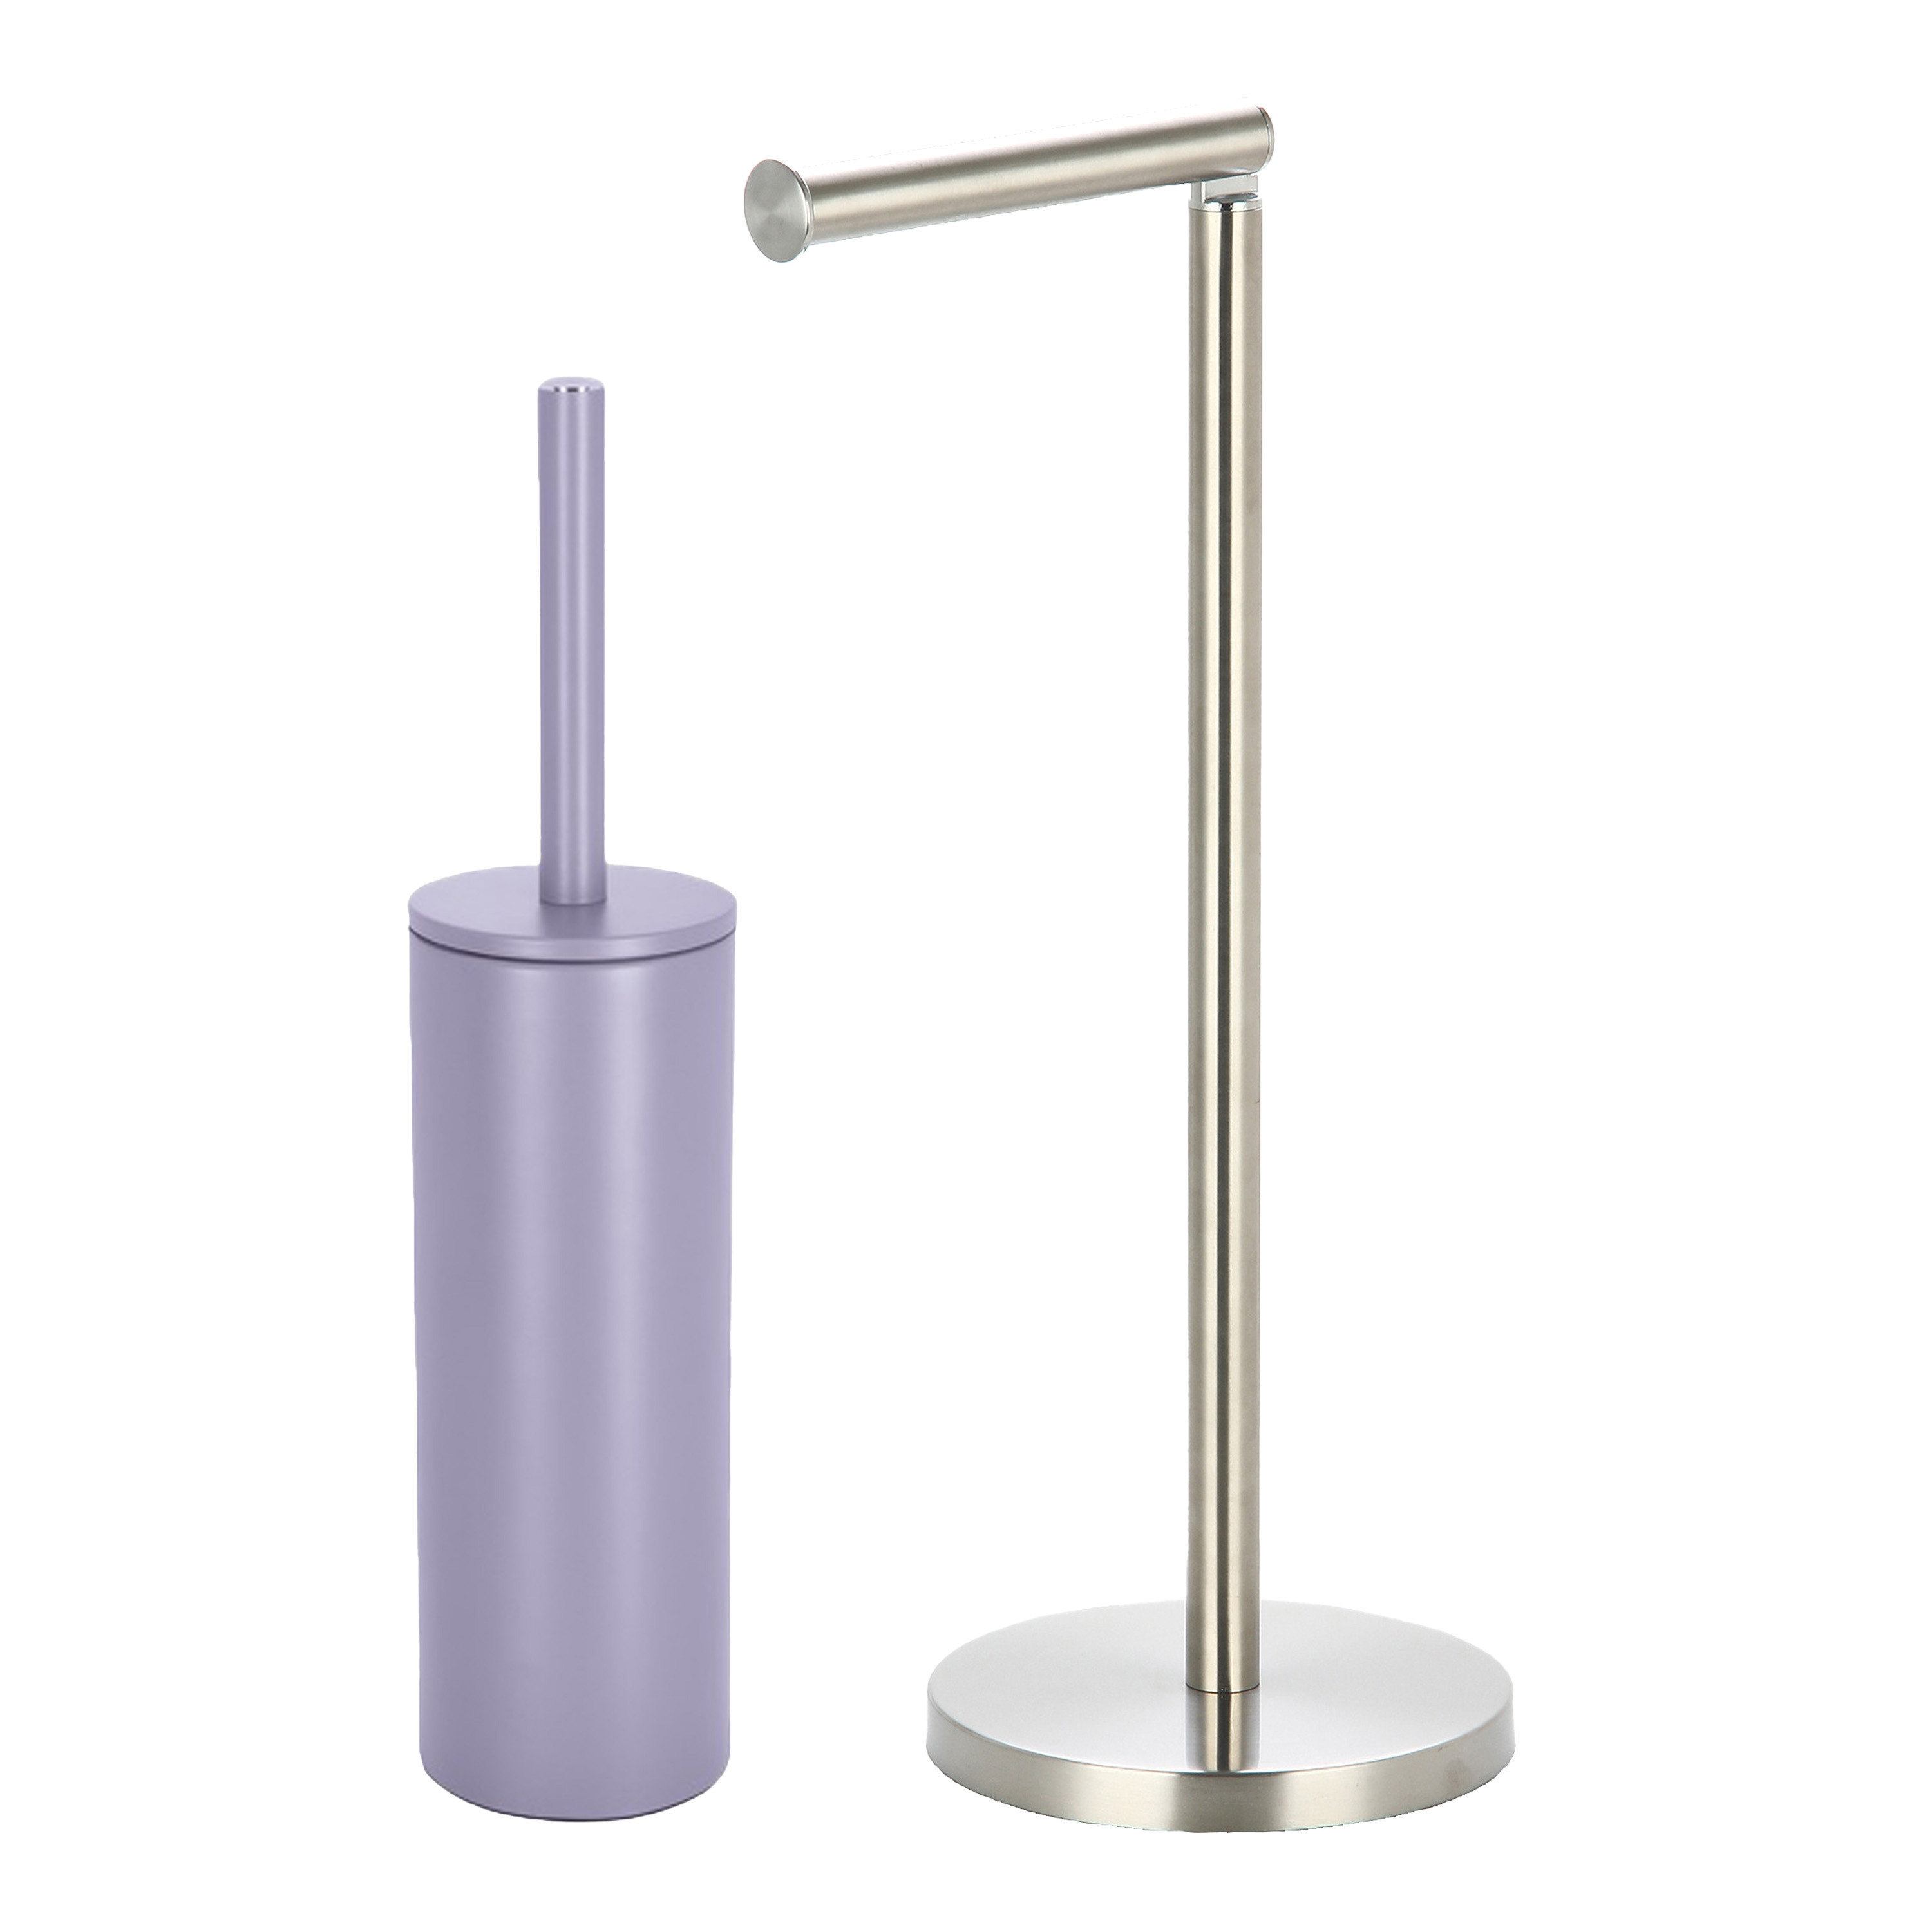 Badkamer accessoires set WC-borstel-toilet rollen houder metaal-porselein lila paars